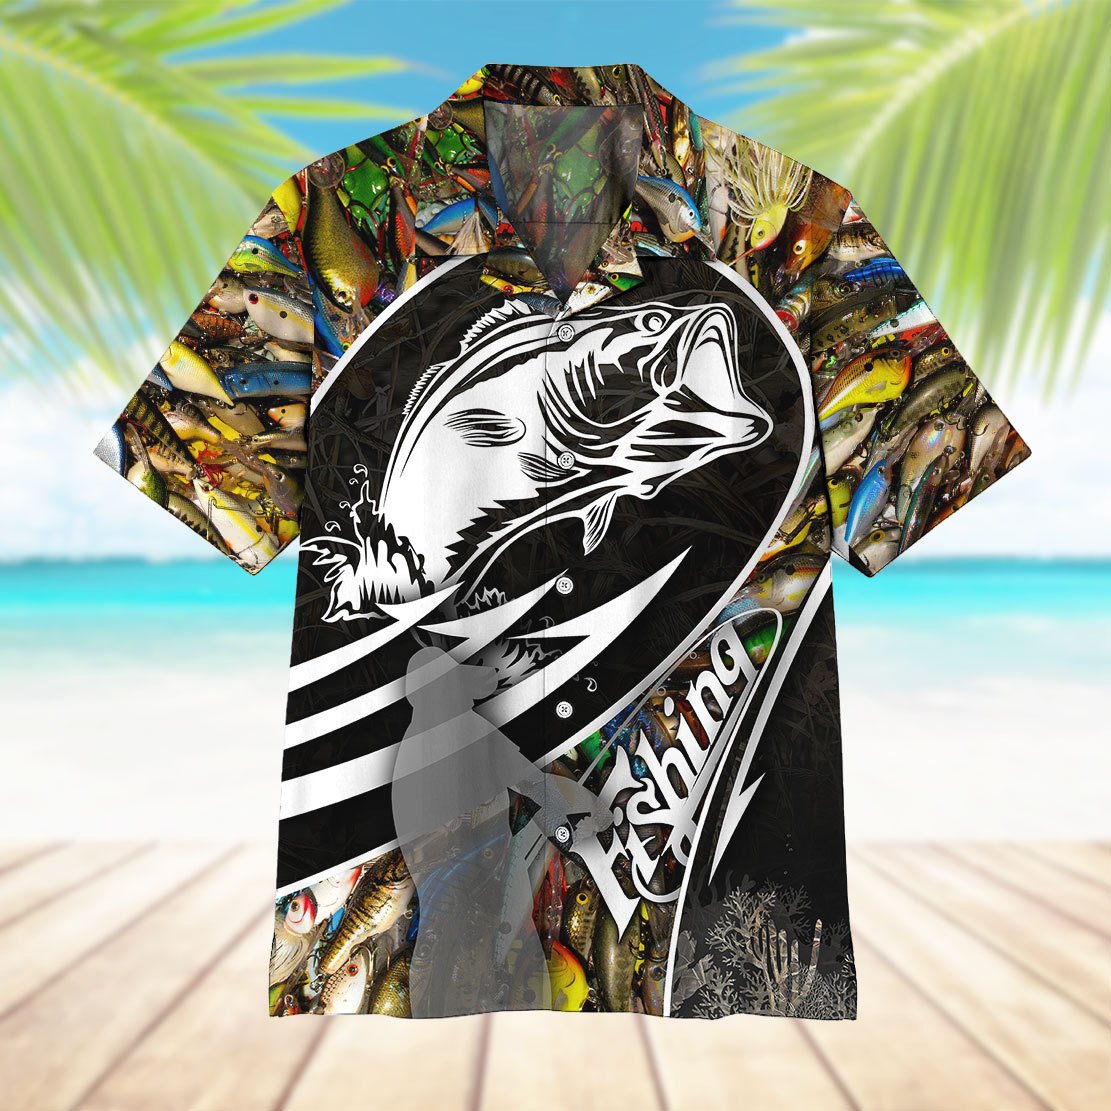 Unifinz Fishing Hawaiian Shirt Colorful Fish Bass Fish Hawaii Shirt Fishing Aloha Shirt 2022